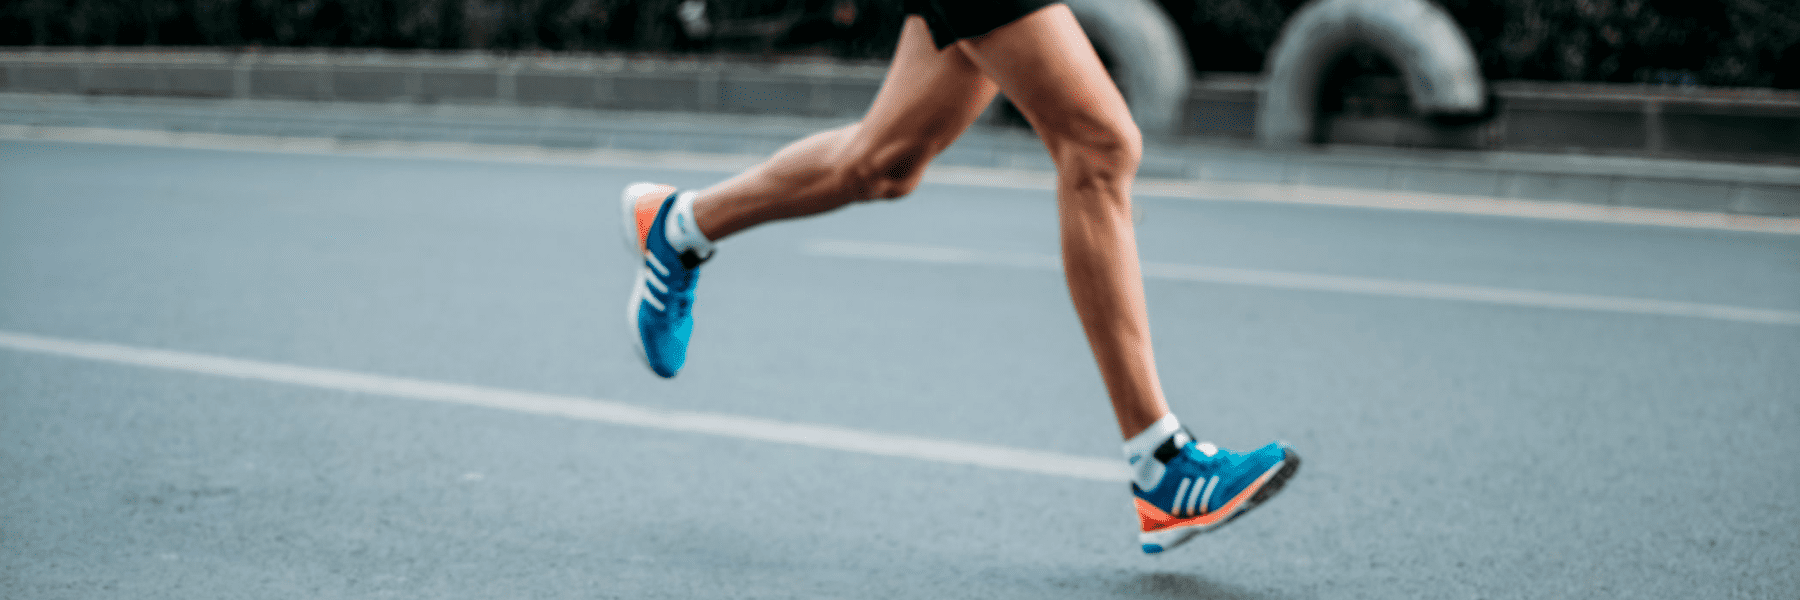 Styrketräning för löpare – därför är det viktigt